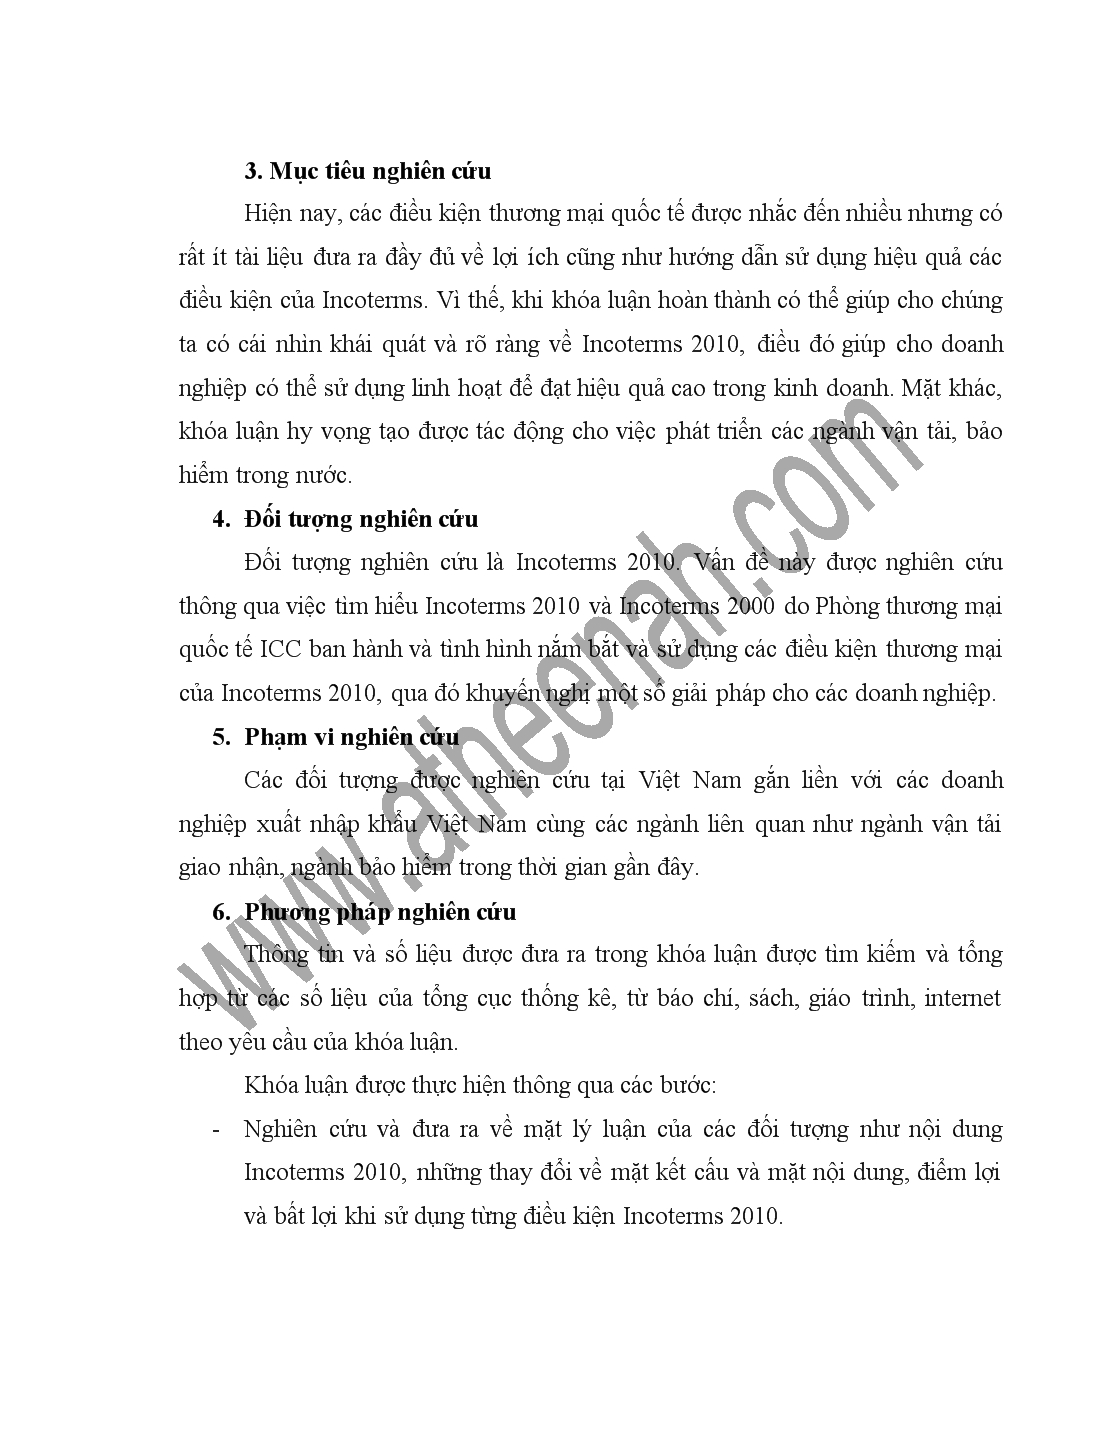 Đề tài Những thay đổi trong Incoterms 2010 và khuyến nghị cho các doanh nghiệp xuất nhập khẩu Việt Nam trong việc sử dụng các điều khoản của Incoterms 2010 trang 3